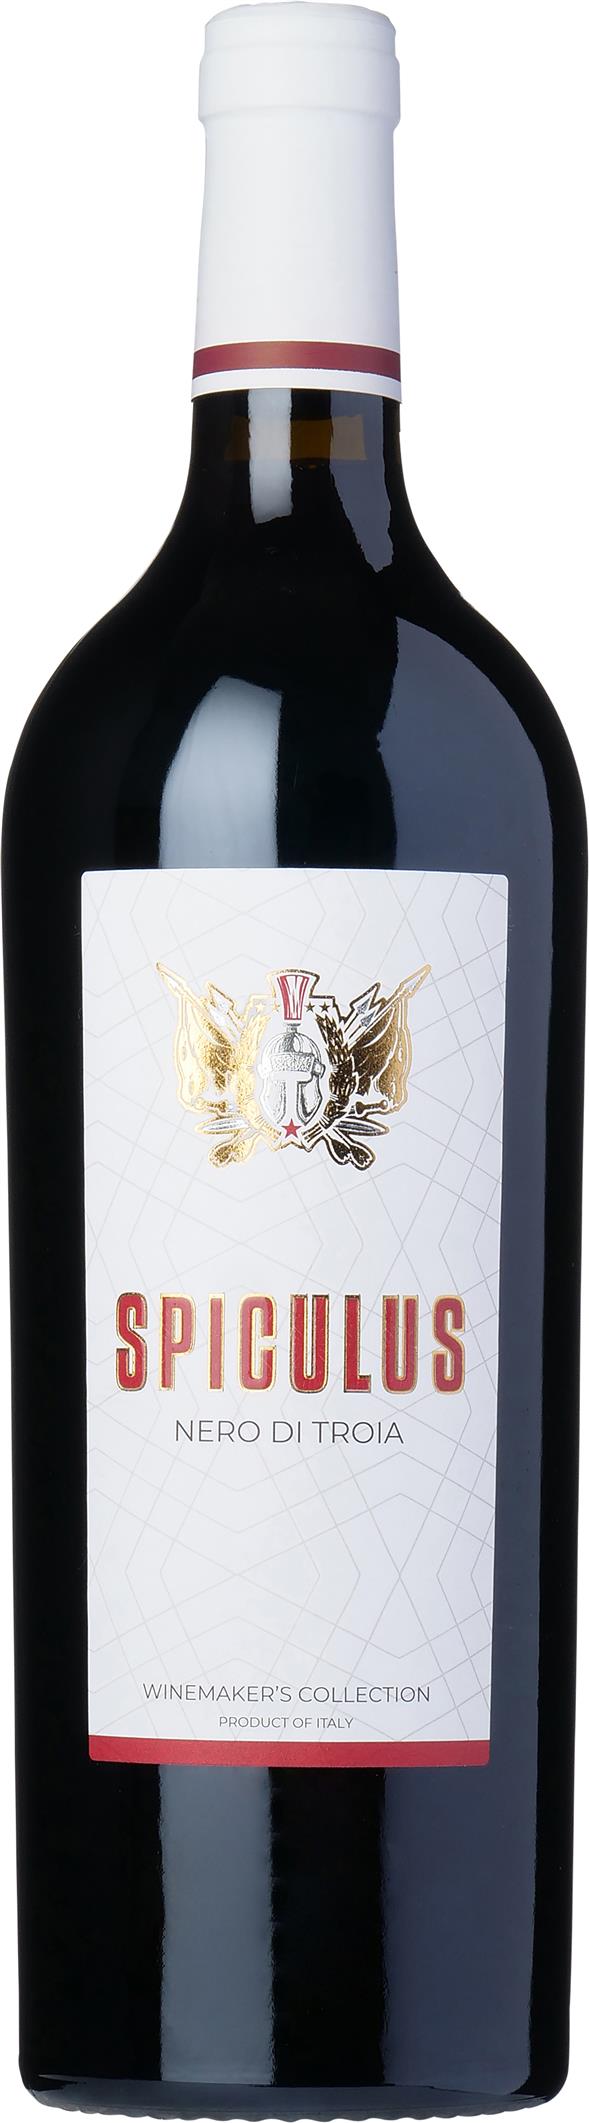 Spiculus 2017 Nero di Troia Winemaker’s Collection